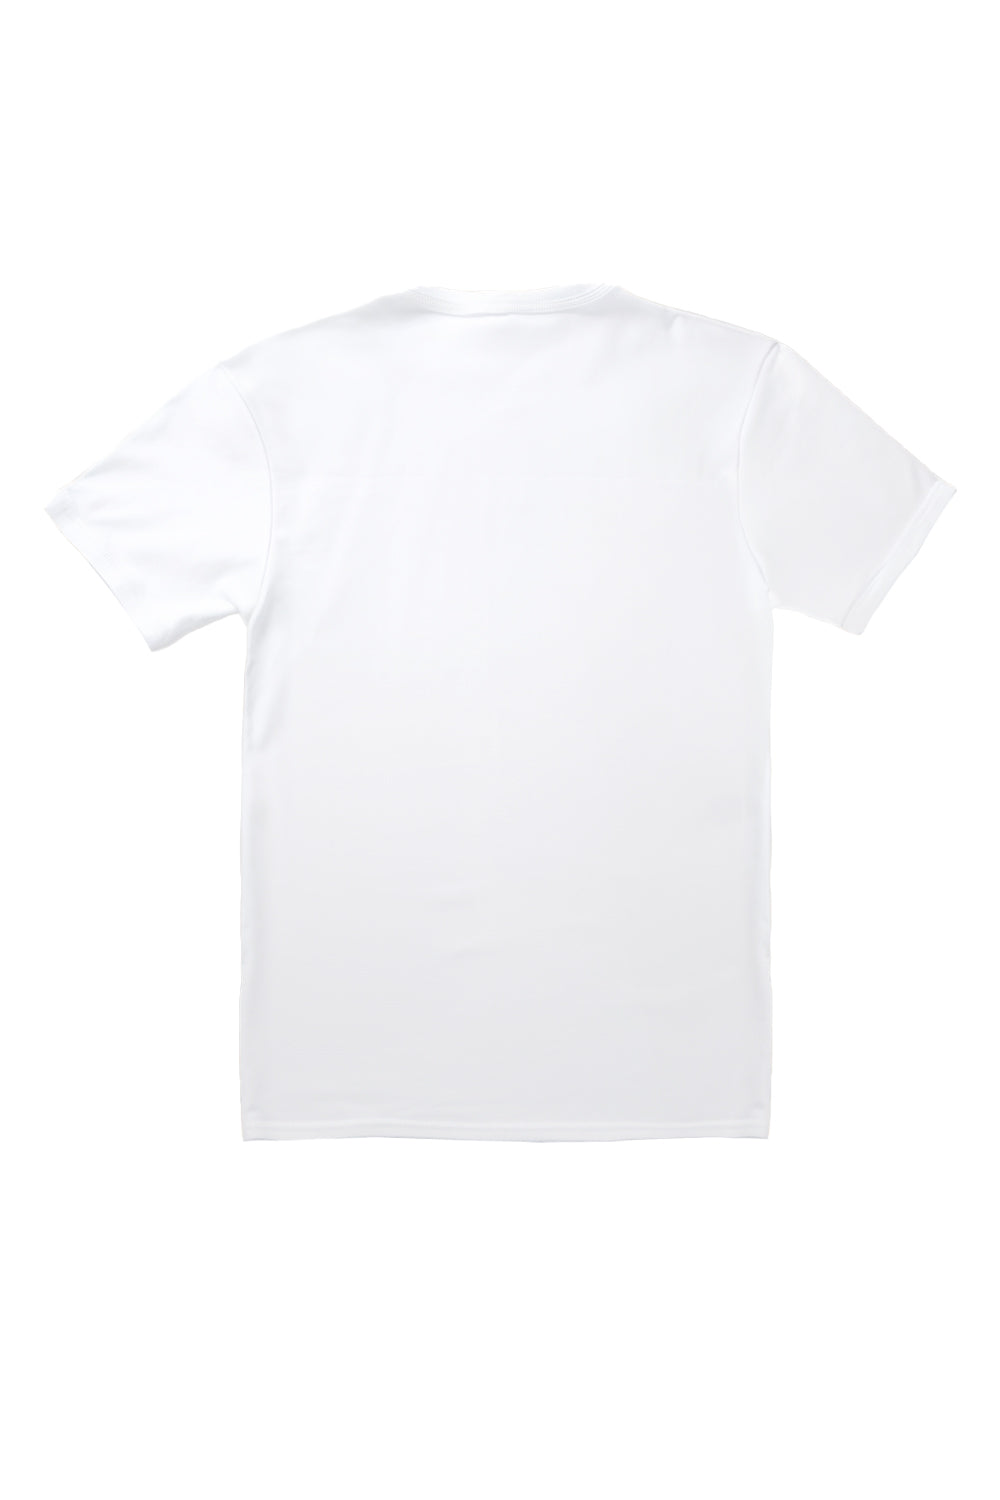 Multiple Hearts T-Shirt in White (Custom Packs)